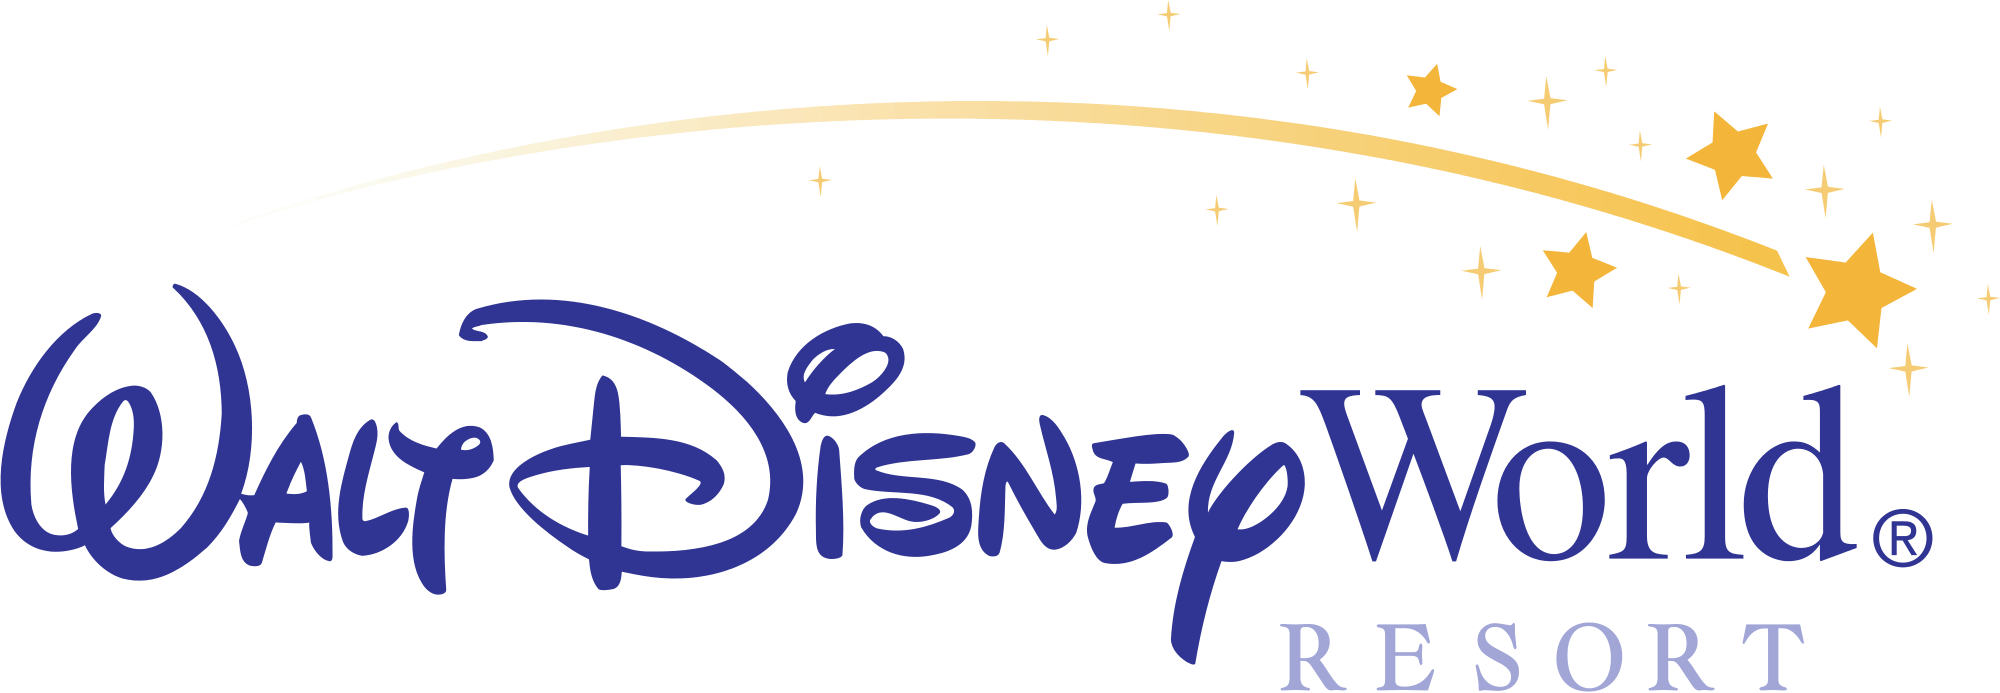 Disney Resorts and Parks Logo - Walt Disney Parks and Resorts | Disney Wiki | FANDOM powered by Wikia